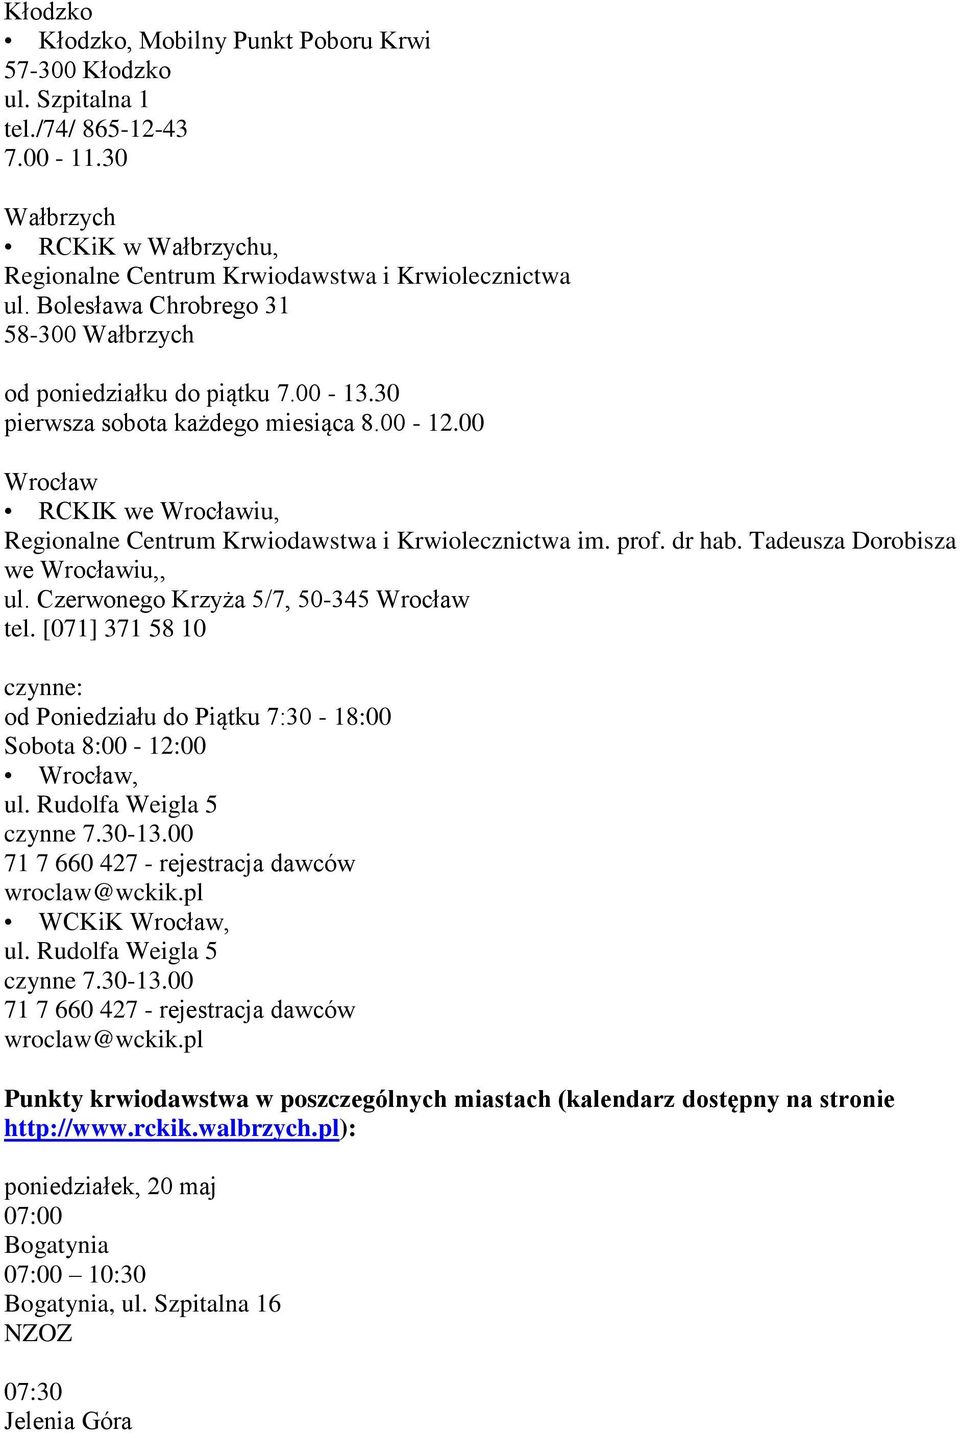 00 Wrocław RCKIK we Wrocławiu, Regionalne Centrum Krwiodawstwa i Krwiolecznictwa im. prof. dr hab. Tadeusza Dorobisza we Wrocławiu,, ul. Czerwonego Krzyża 5/7, 50-345 Wrocław tel.